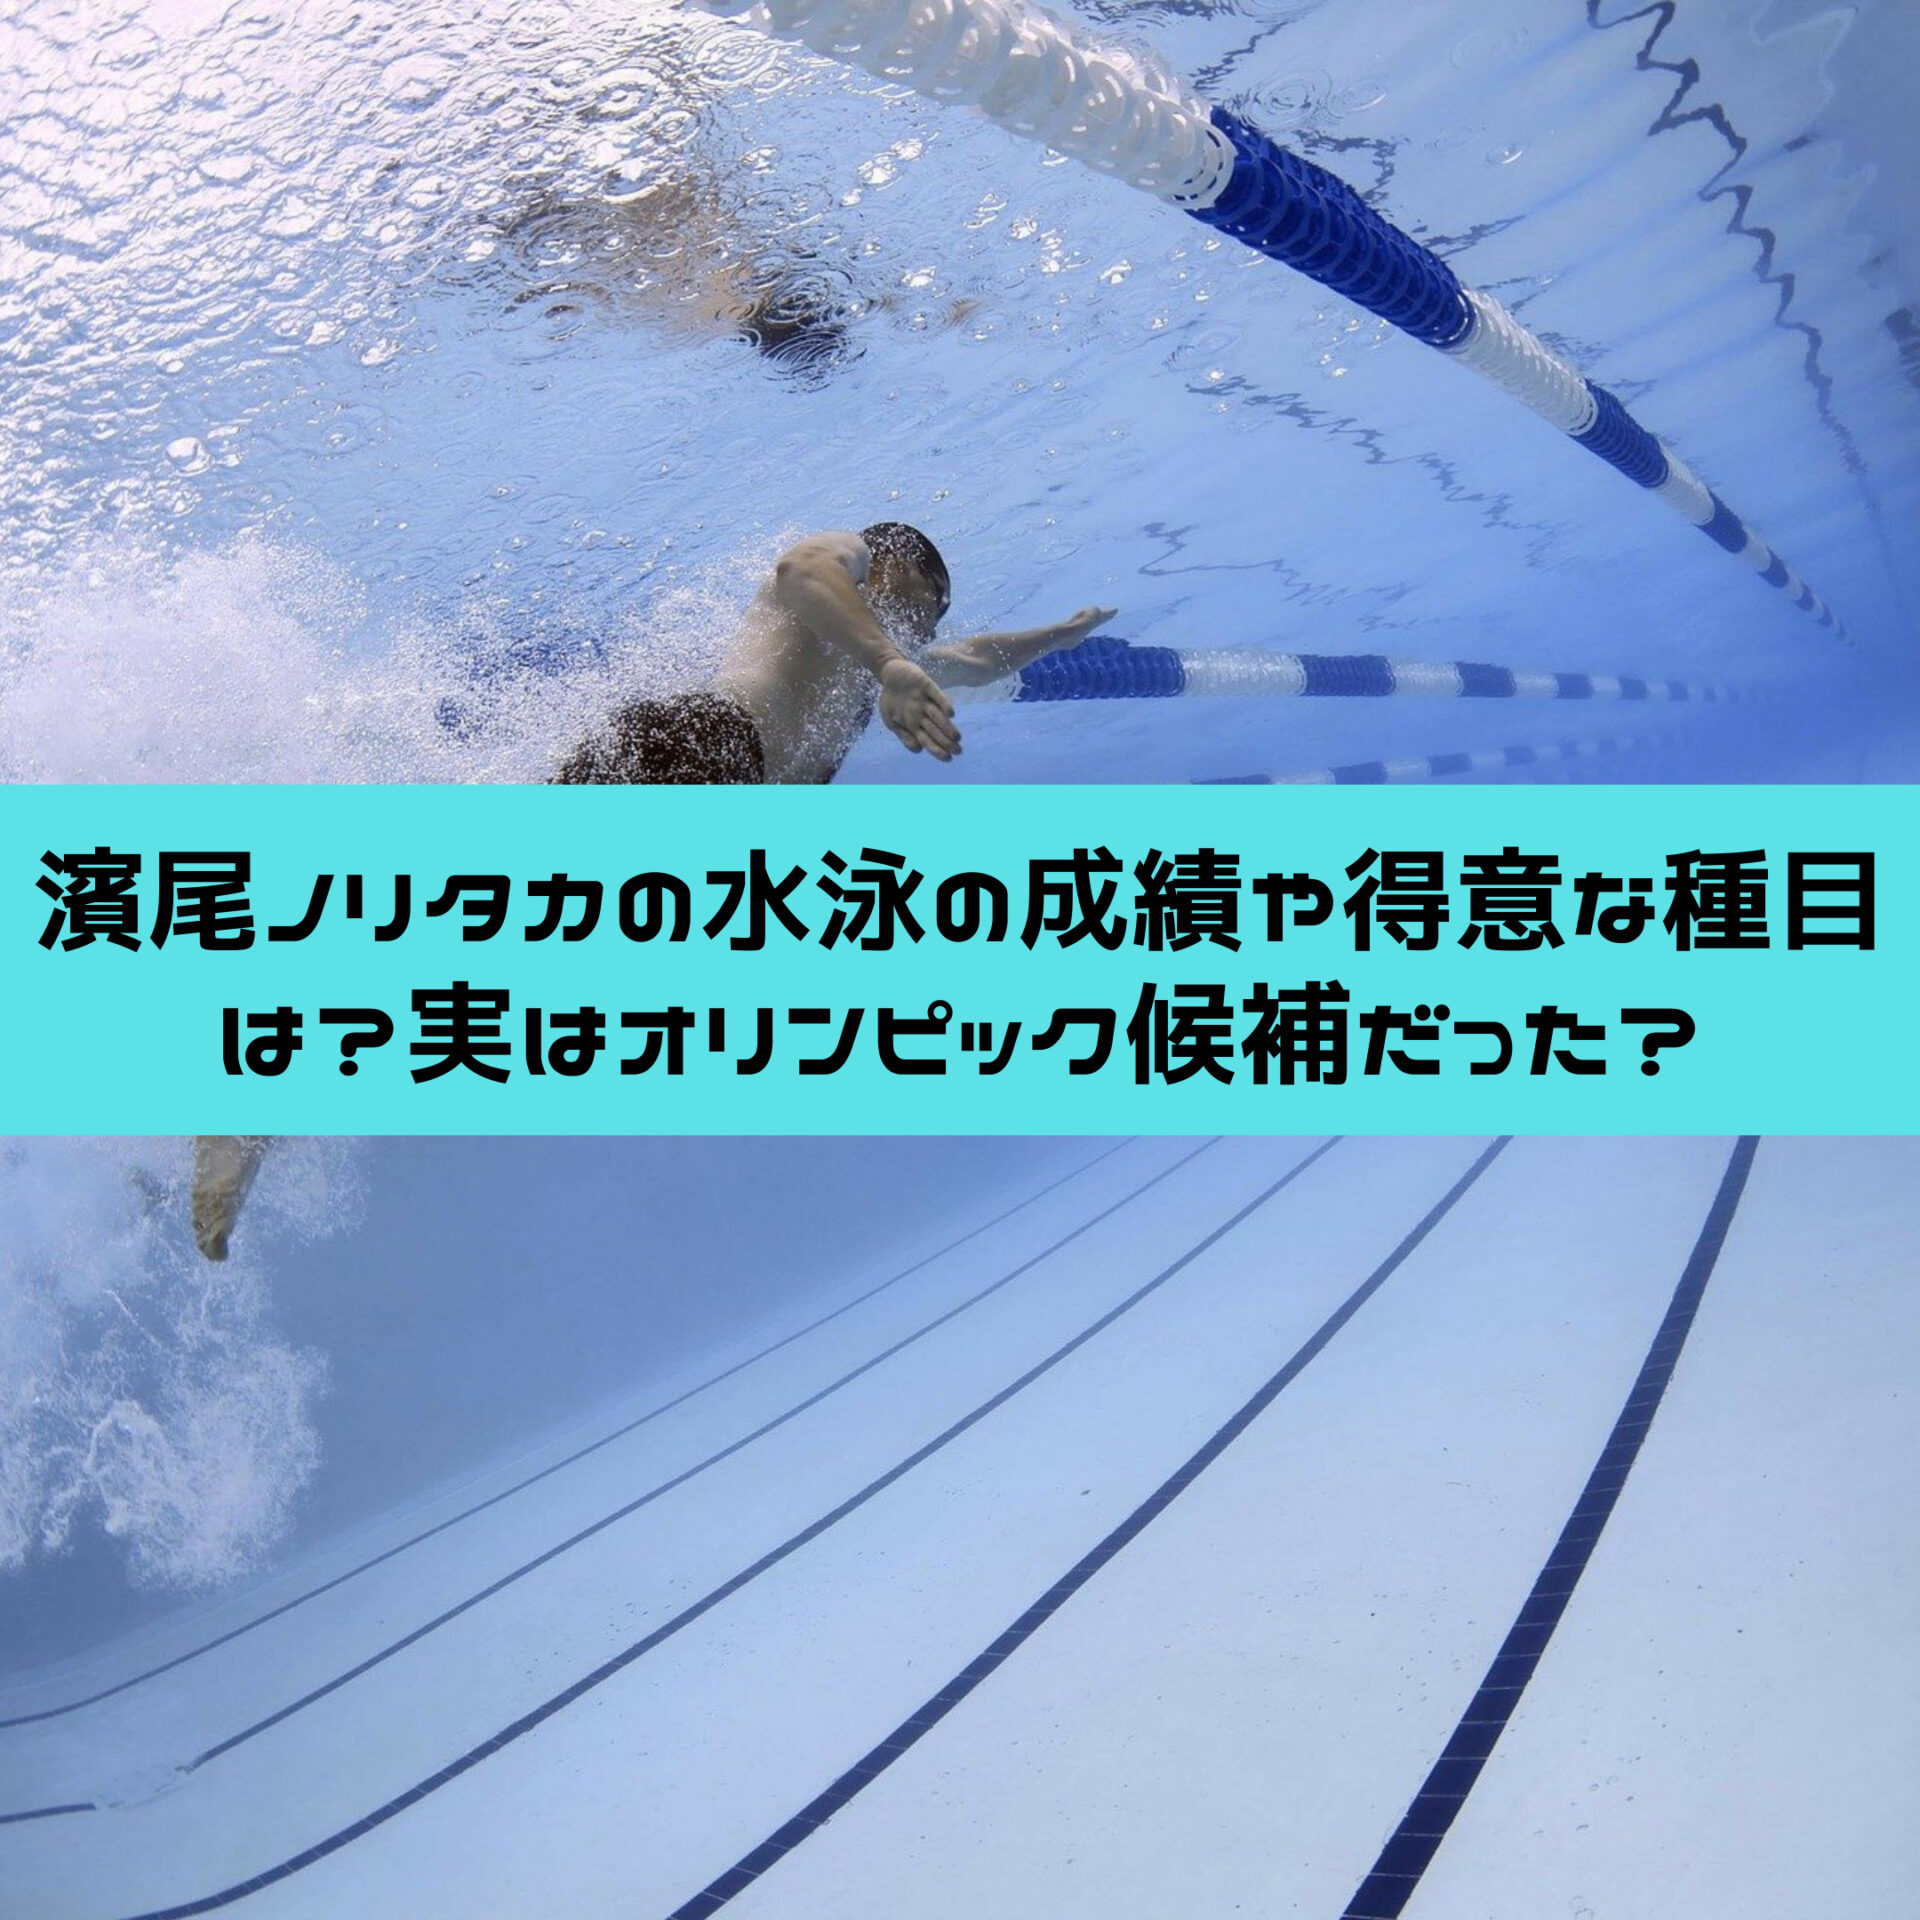 濱尾ノリタカの水泳の成績や得意な種目は 実はオリンピック候補だった すみっこにゅーすうぇぶ